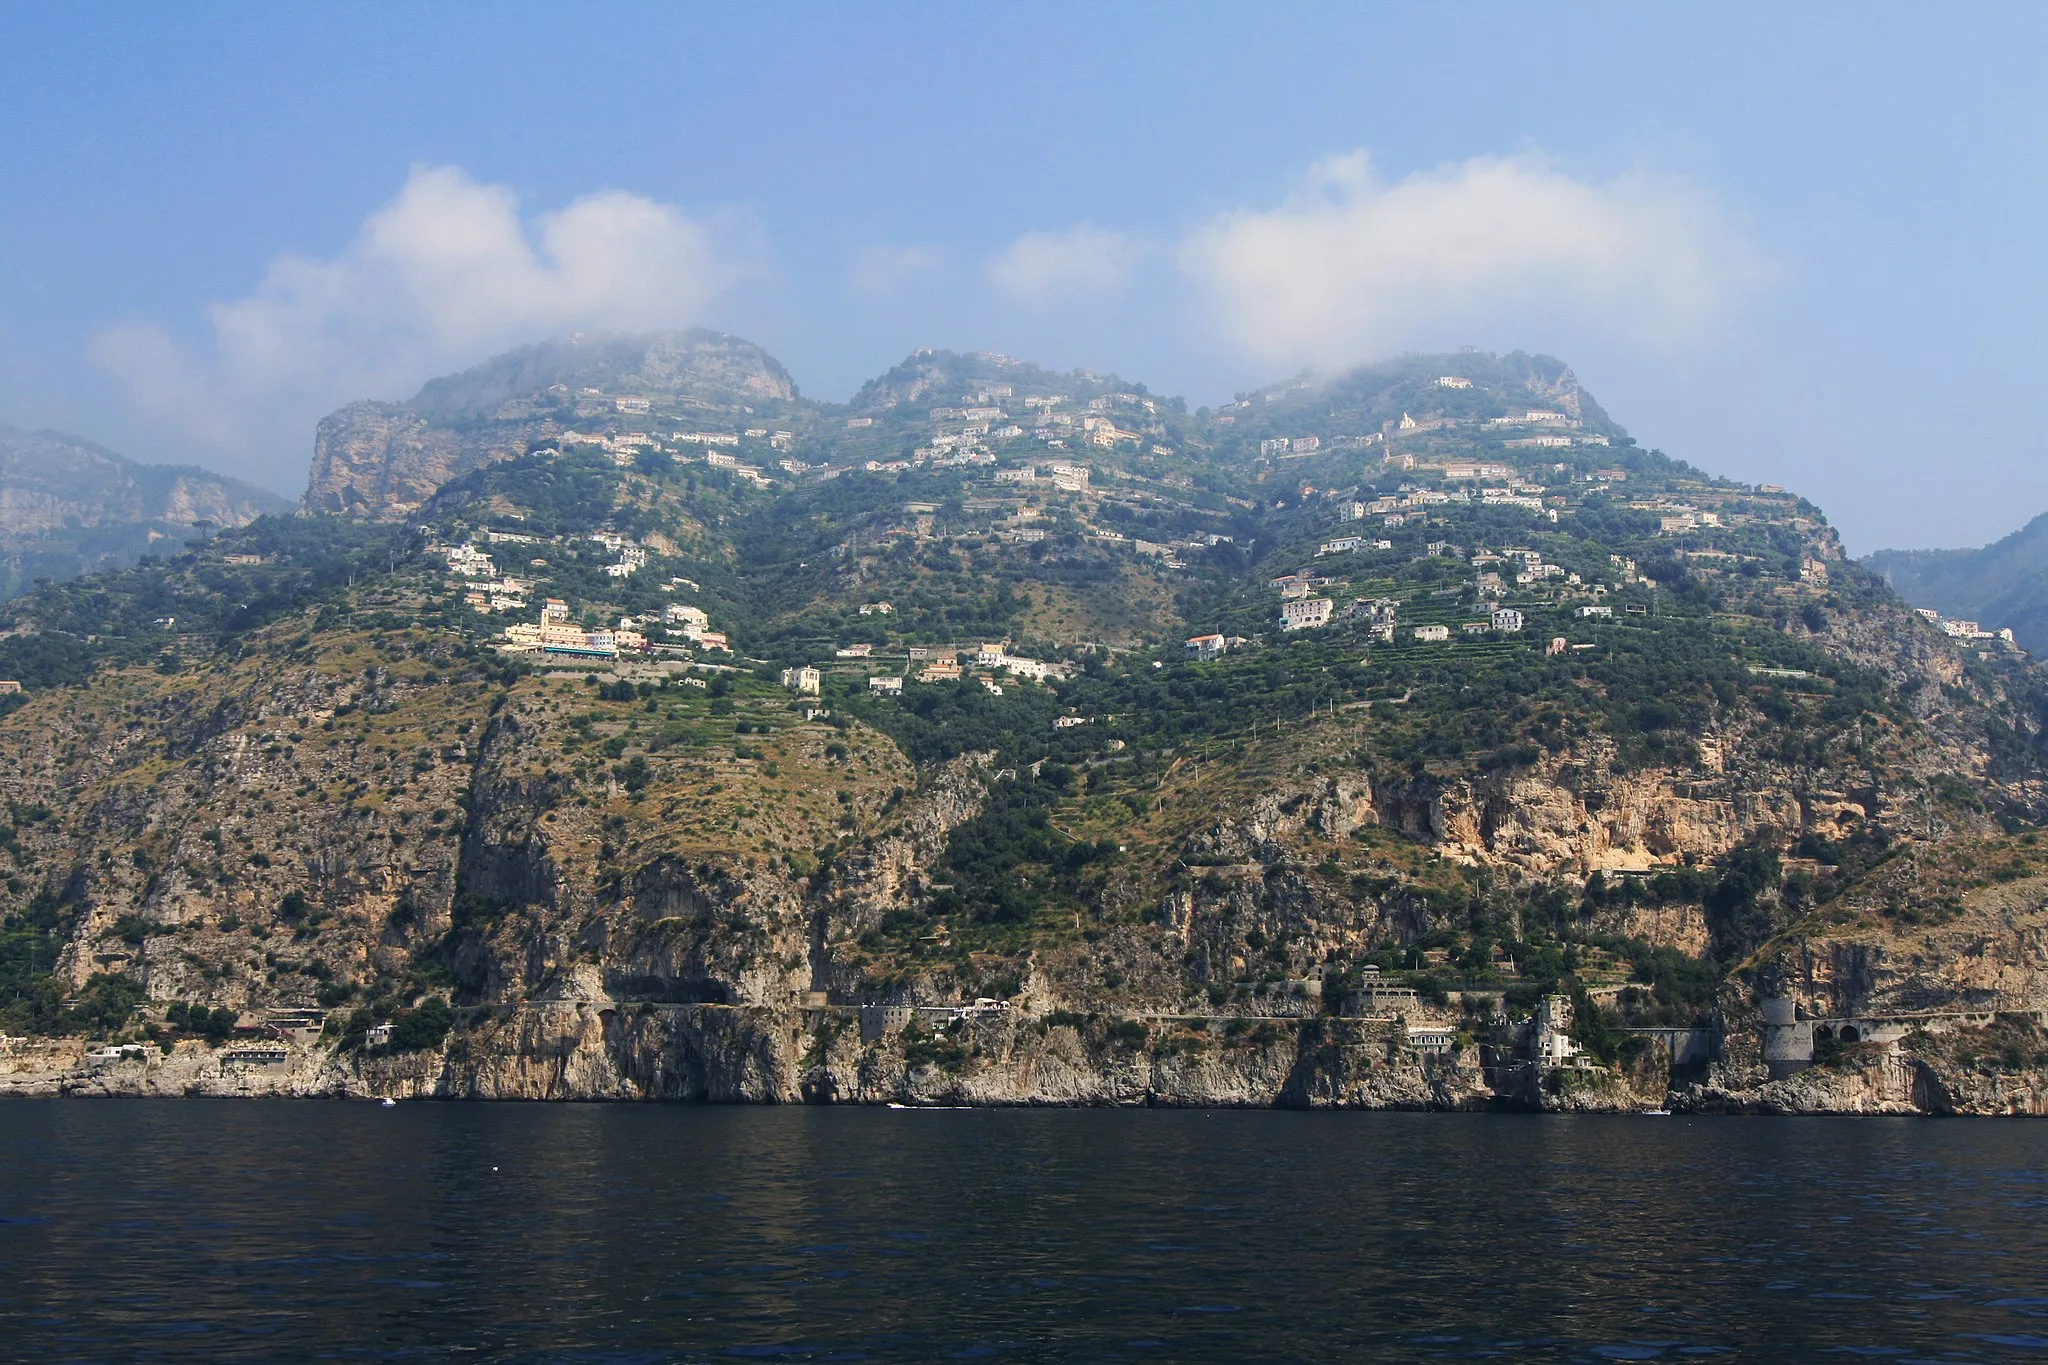 Photo showing: San Michele, Sant'Elia, Comune di Furore, Costa d'Amalfi, Province of Salerno, Italy.